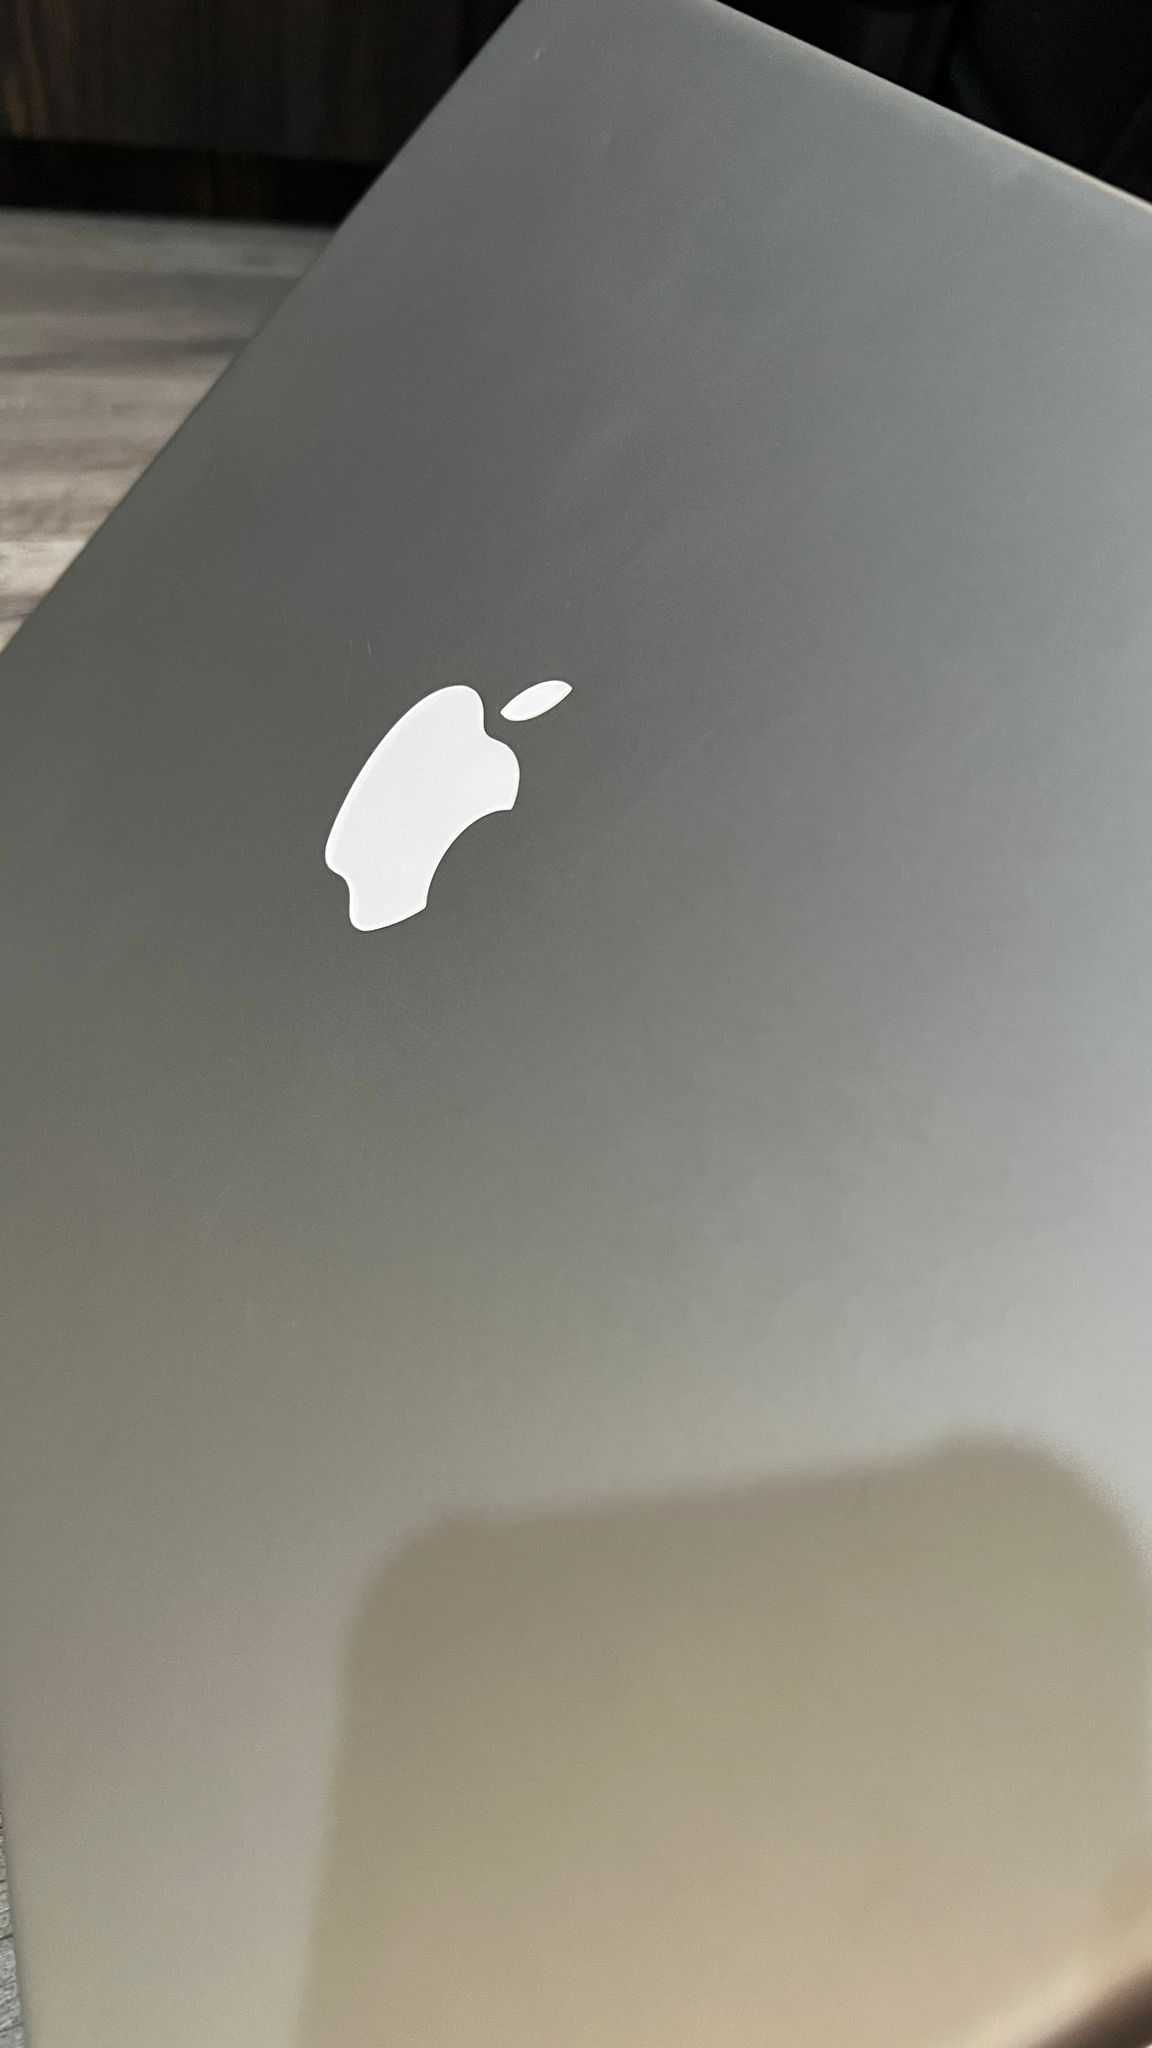 Apple Powerbook G4 1.67 15"